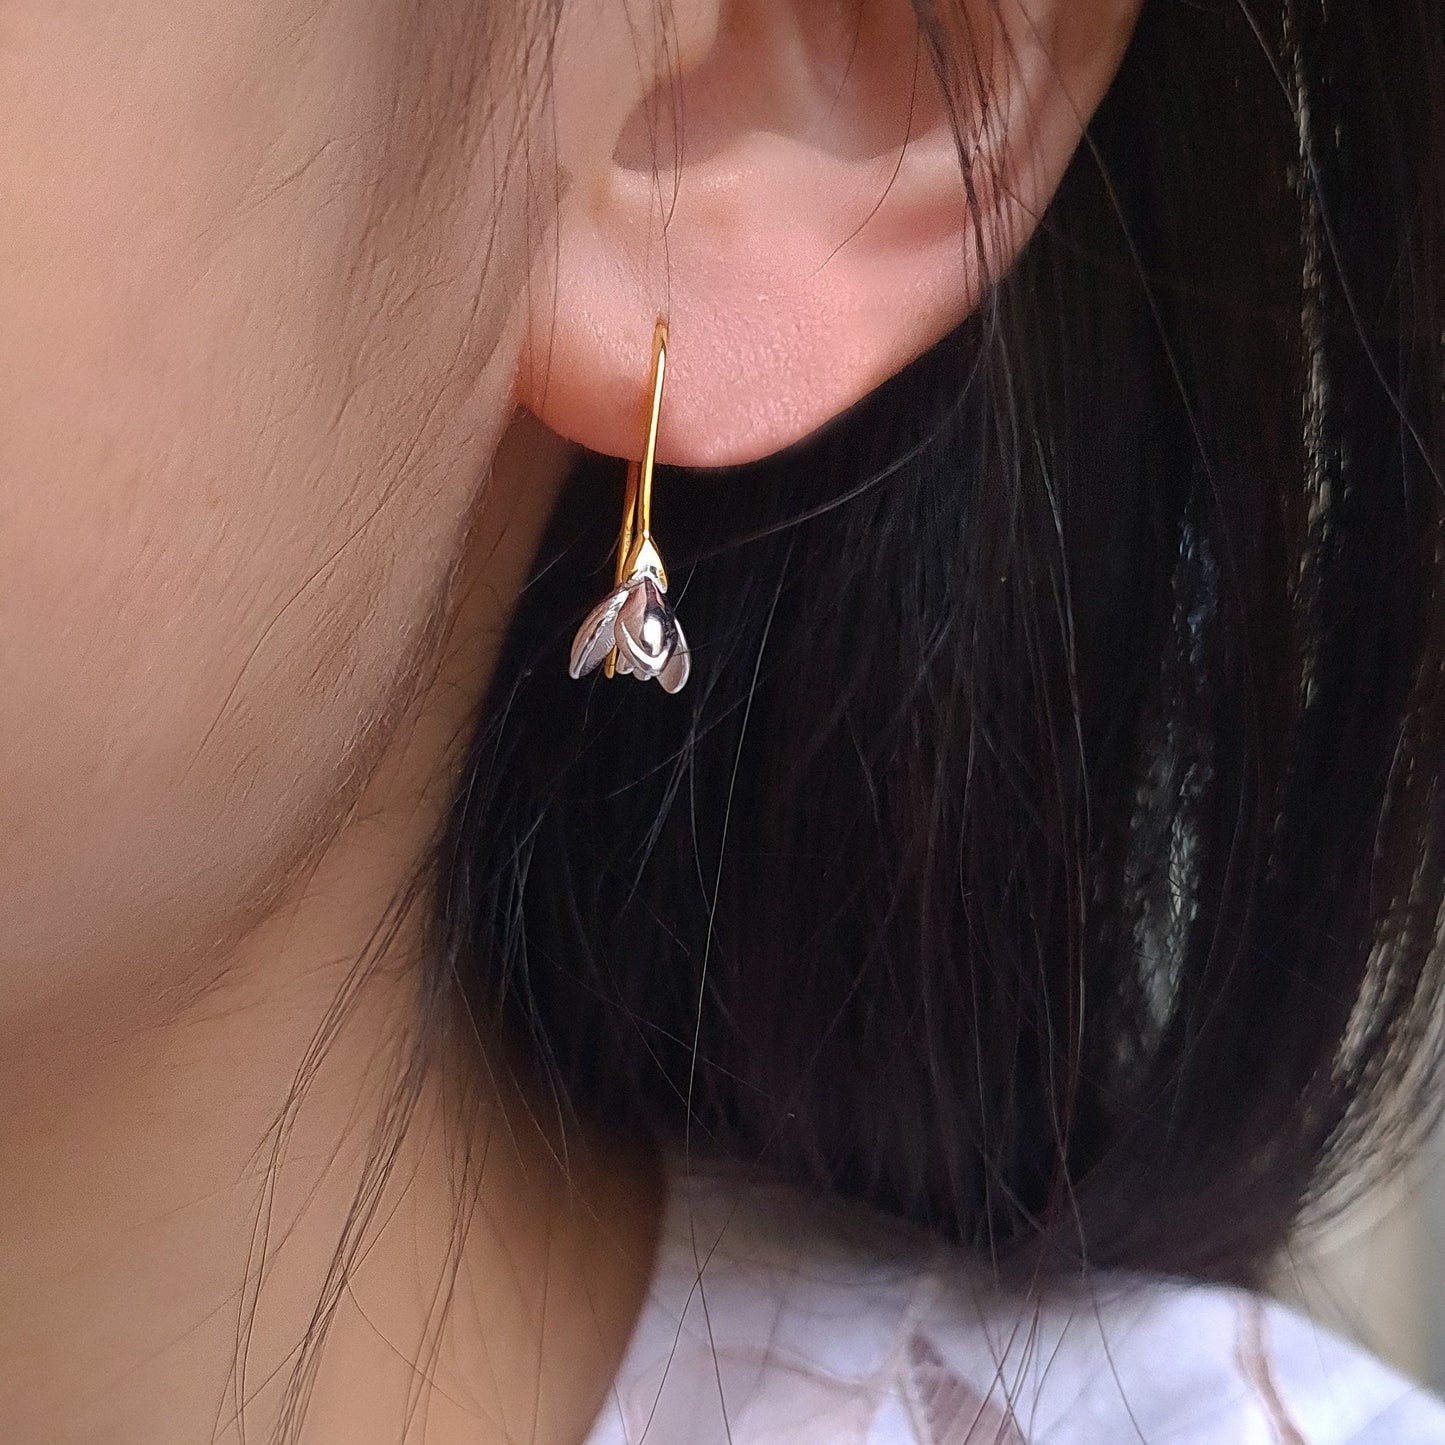 Gold Vermeil Sterling Silver Open Tulip Flower Drop Earrings Sweet Small Flower Bud Earrings